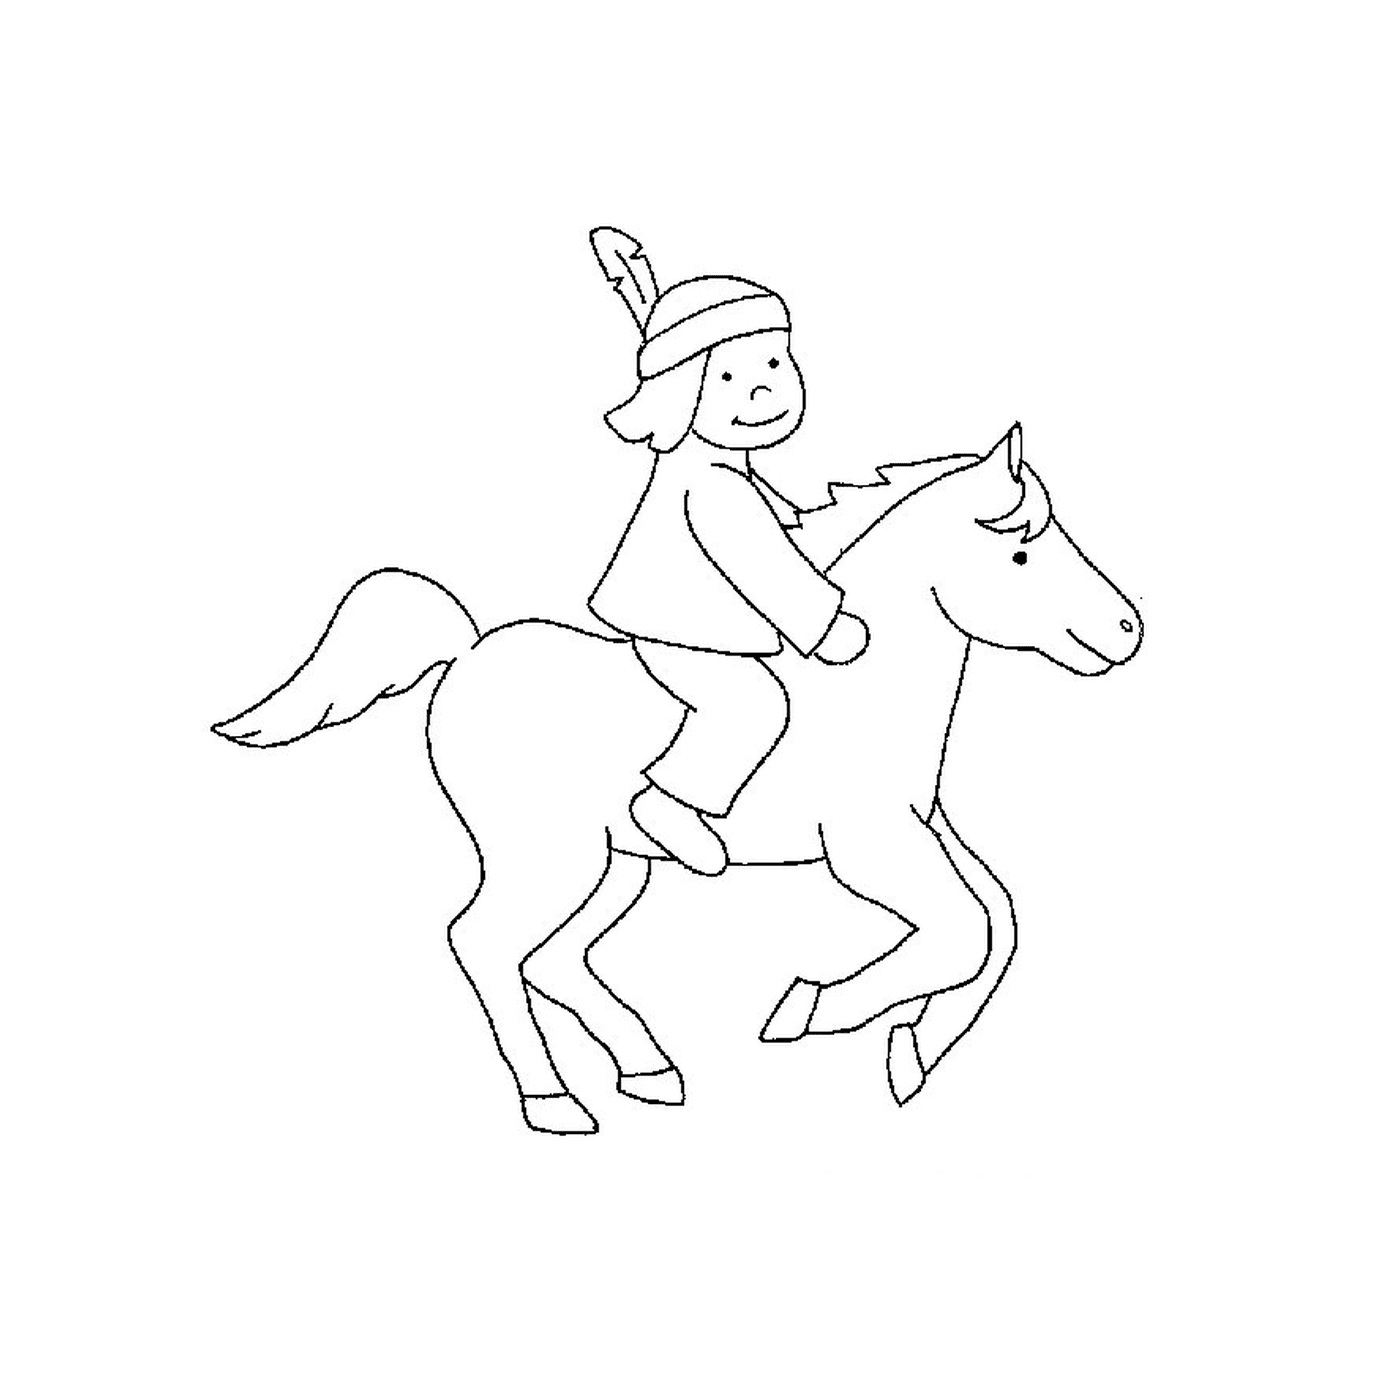  Индейцы на лошадях - человек катается на лошади 